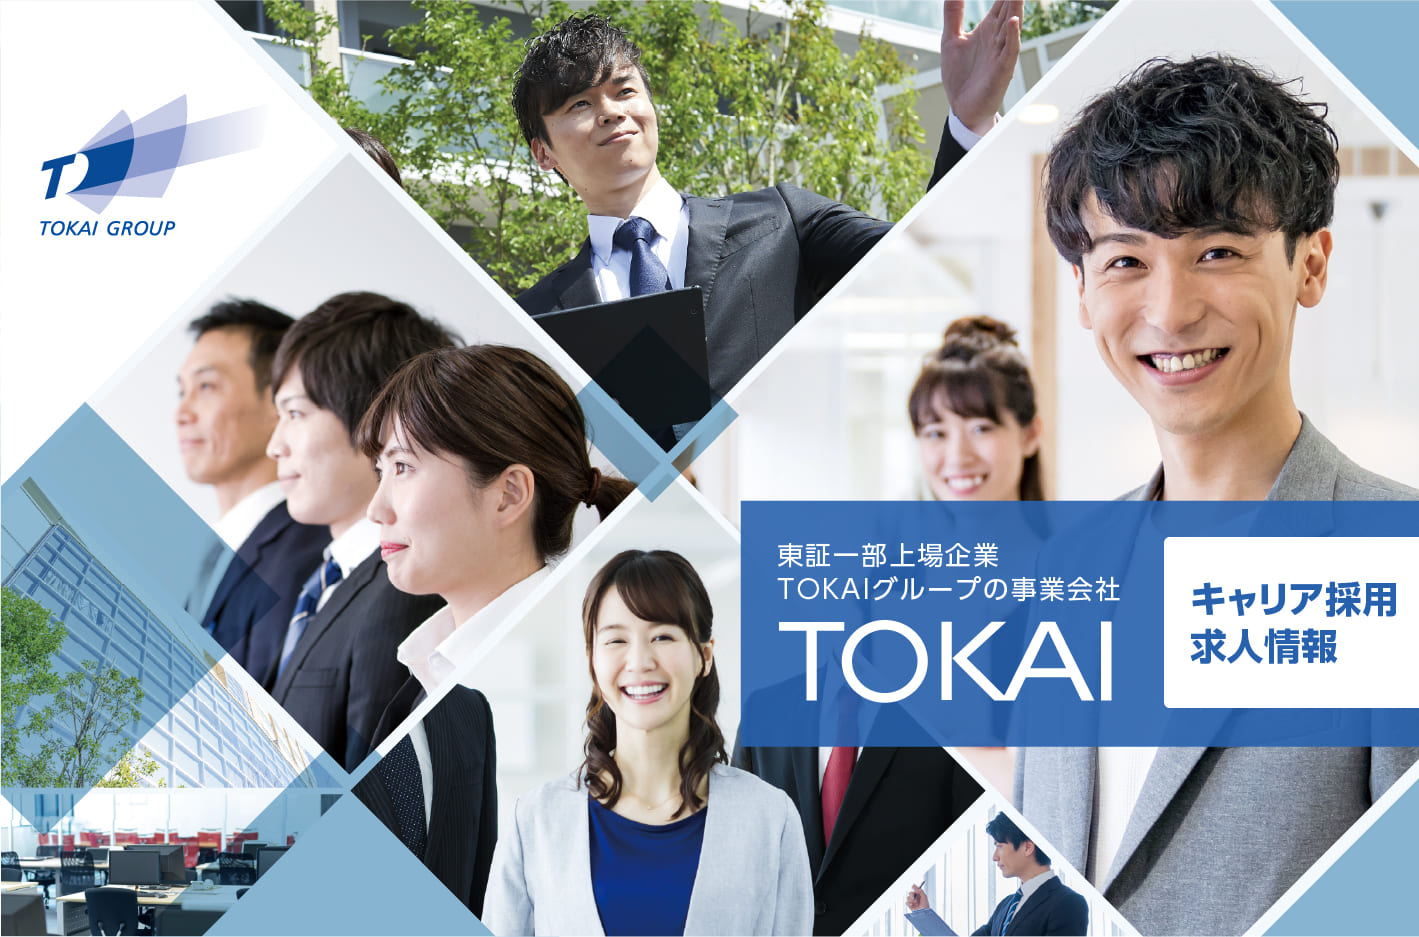 東証一部上場企業TOKAIグループの事業会社TOKAIキャリア採用求人情報